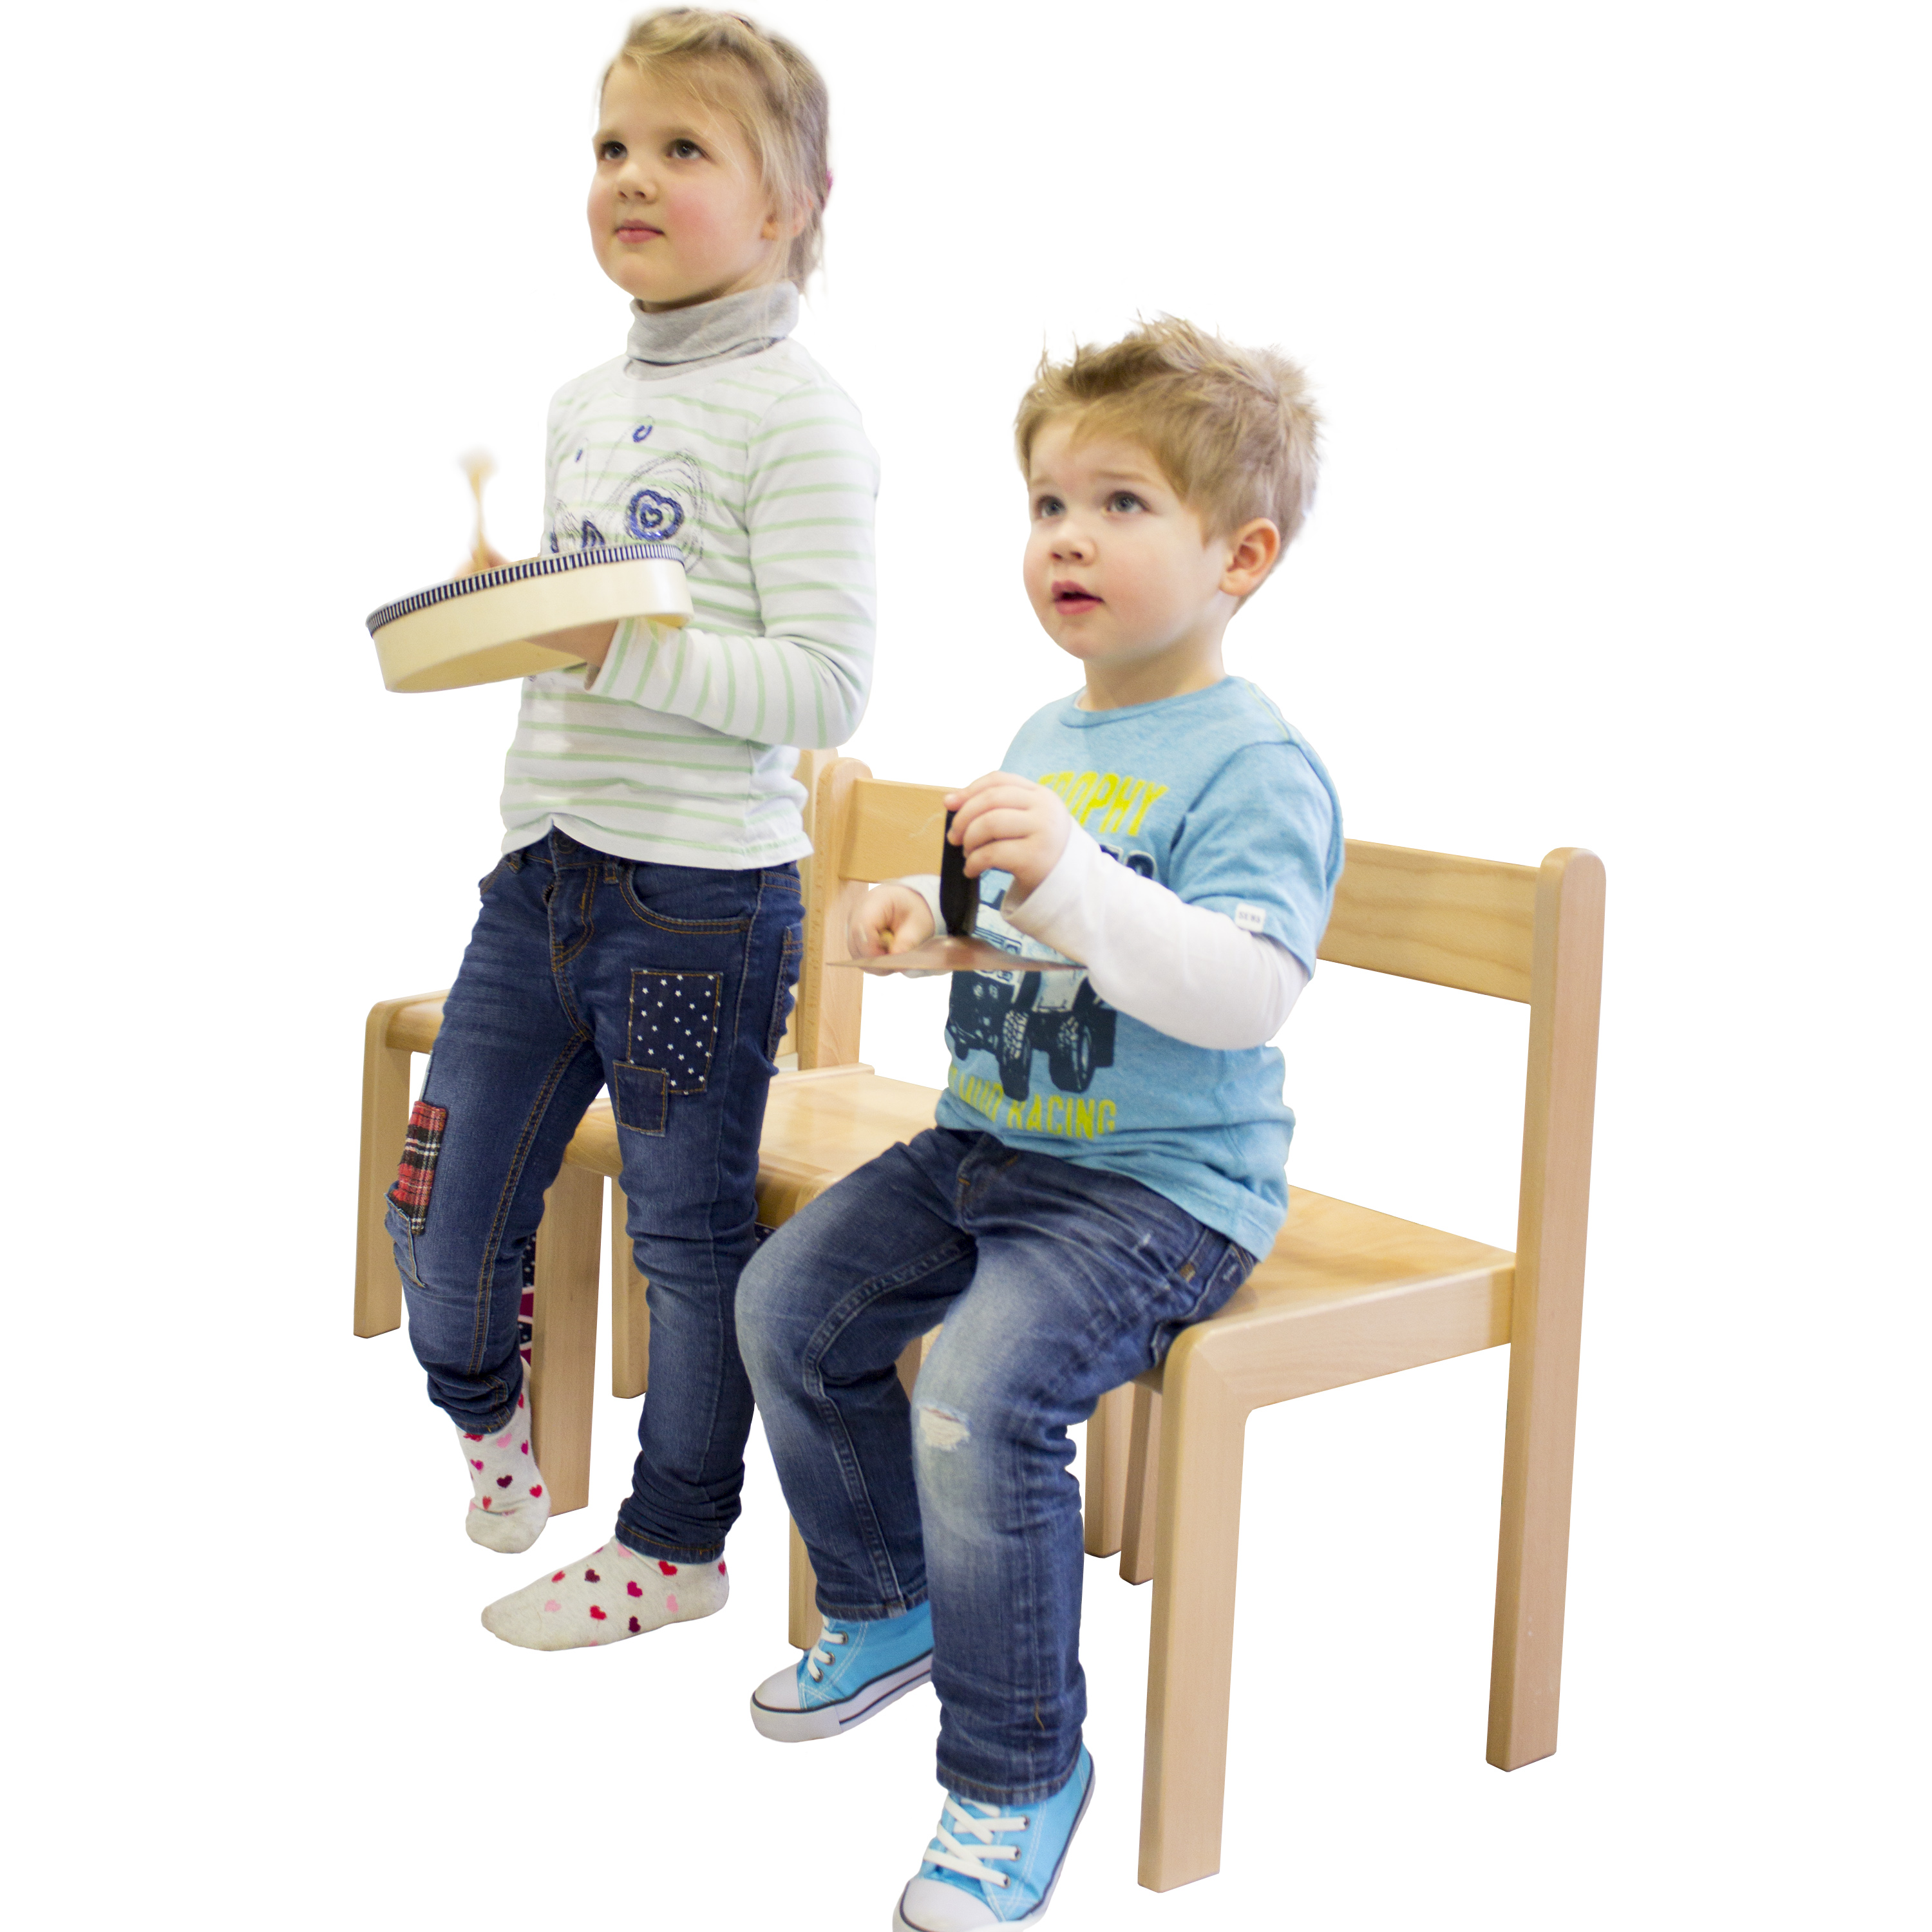 Kindergartenstuhl 'JANNIS', stapelbar, Sitzhöhe 34 cm